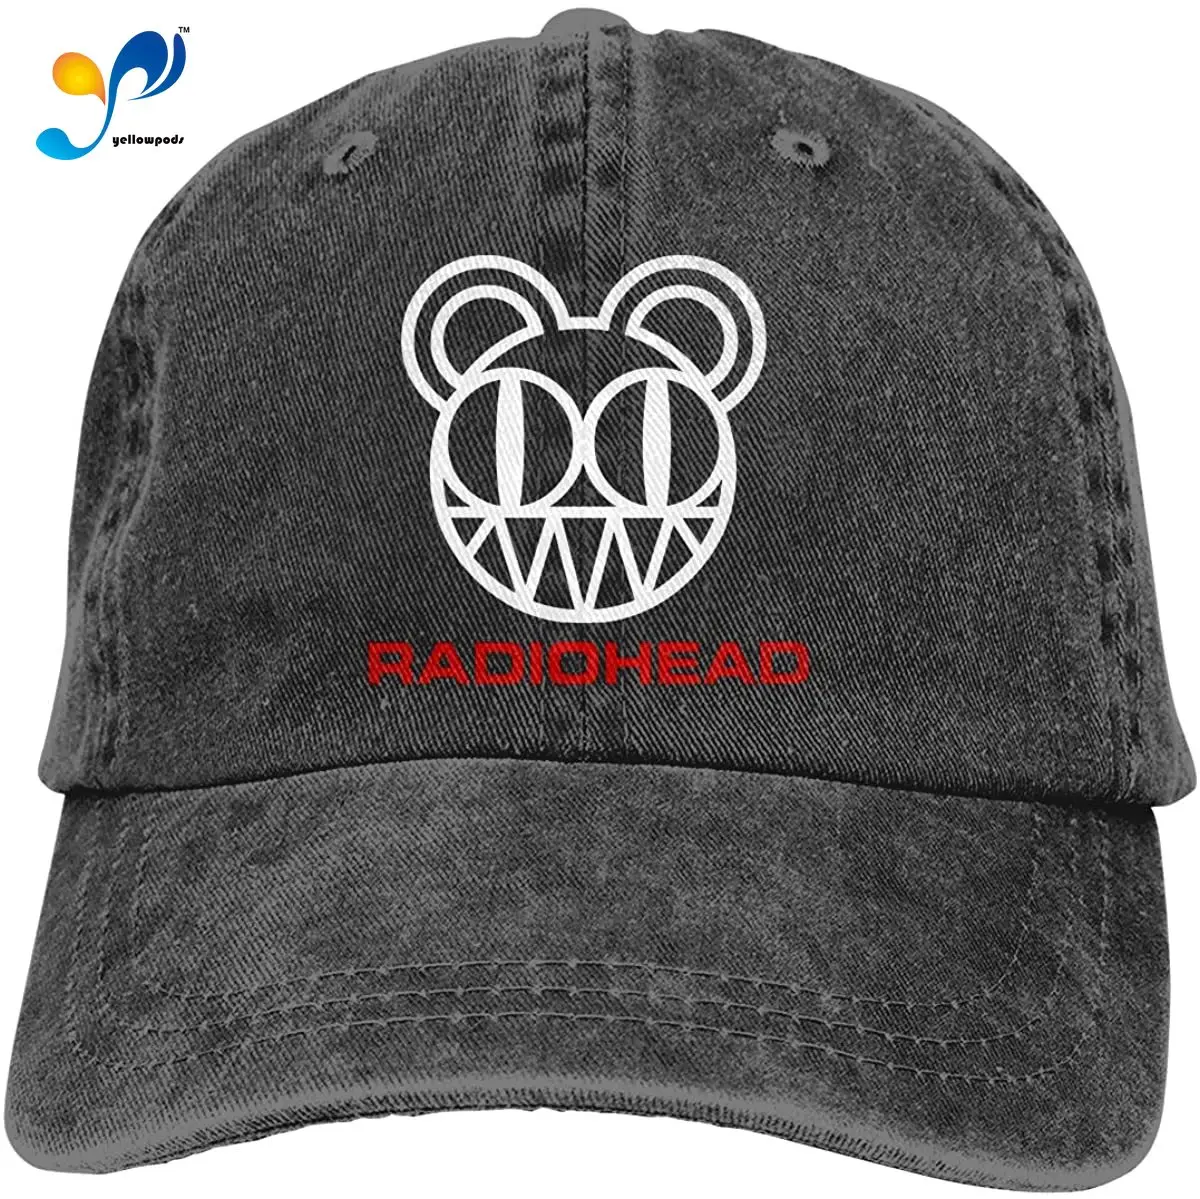 Джинсовая кепка с медведем радио-head, бейсболка, винтажная потертая хлопковая шляпа, регулируемая черная унисекс шляпа